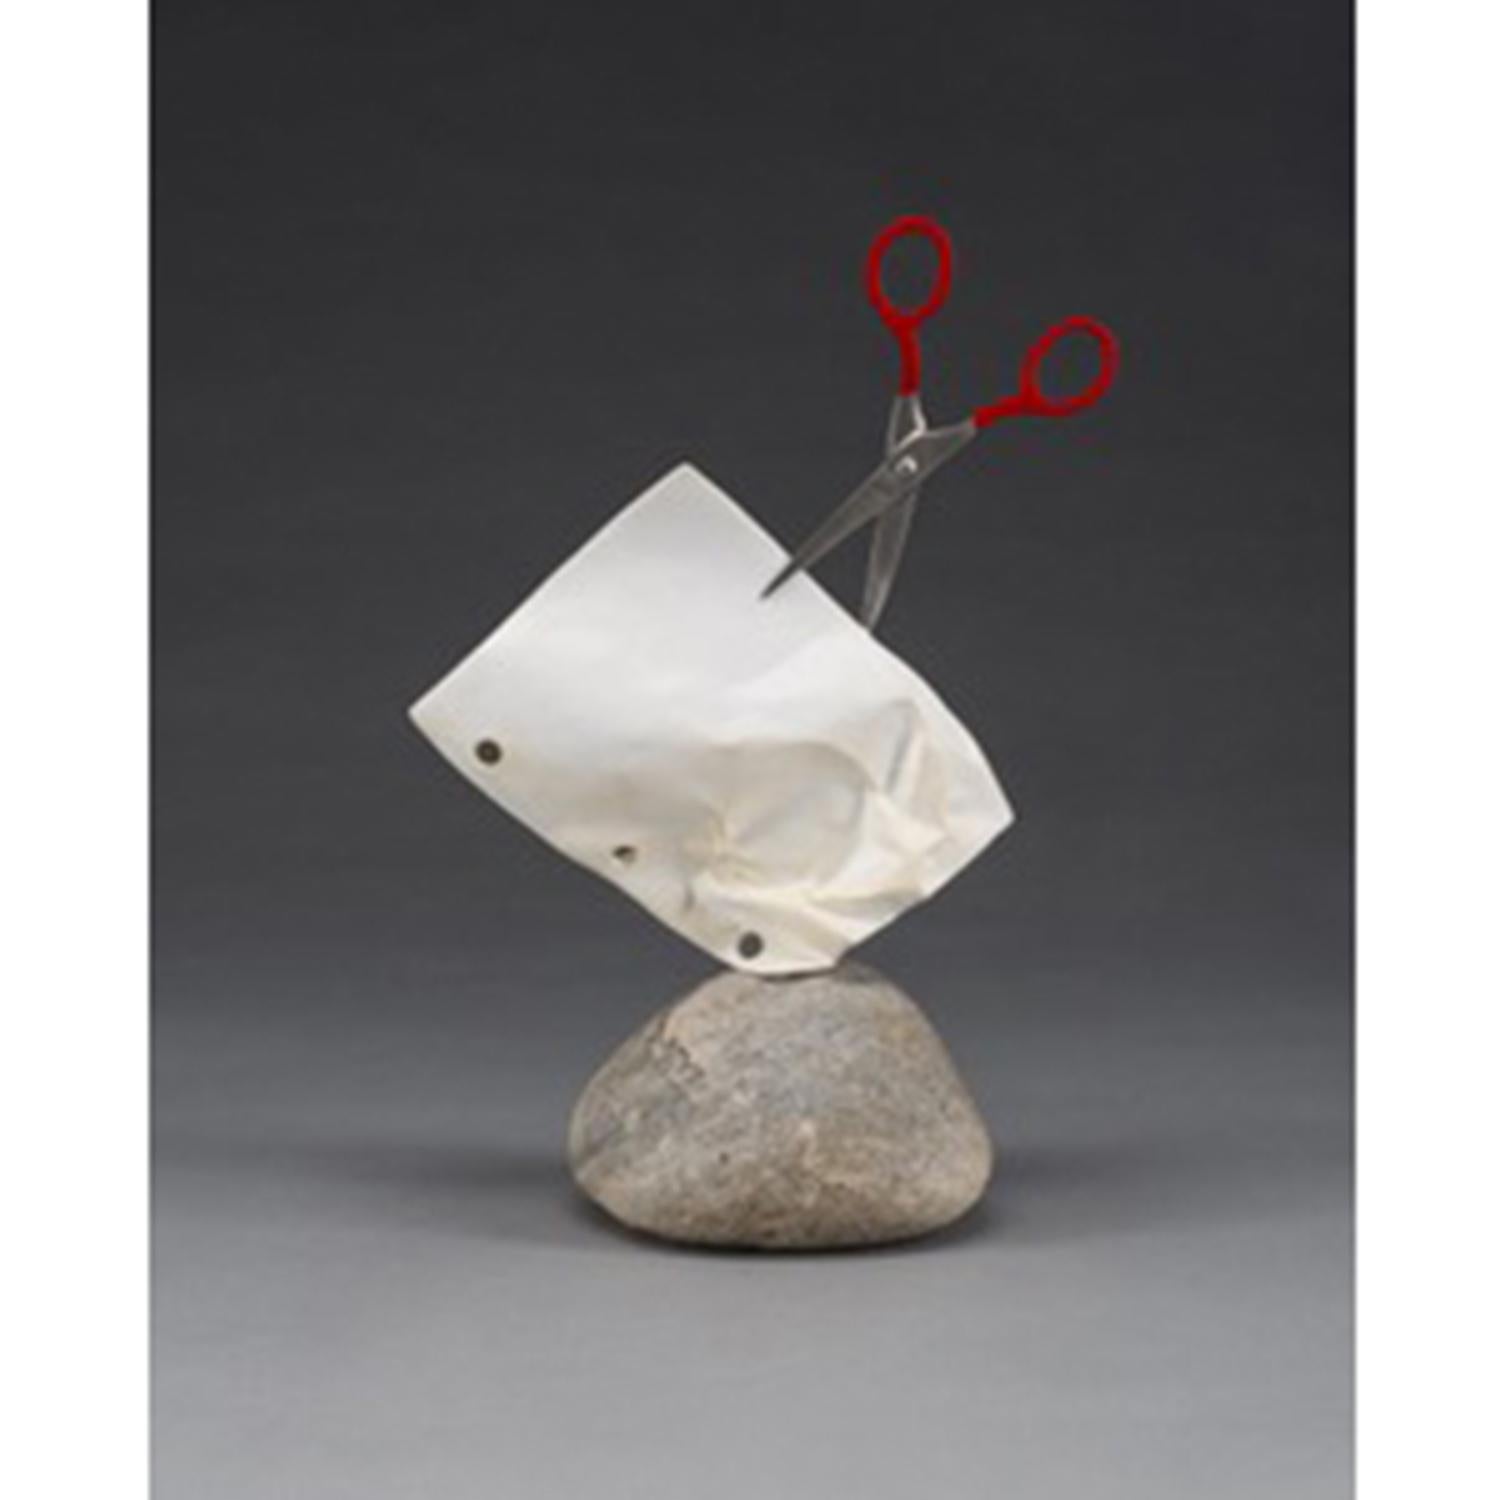 Kevin Box Figurative Sculpture - Stone Paper Scissors (Mini) #65 op/ed 